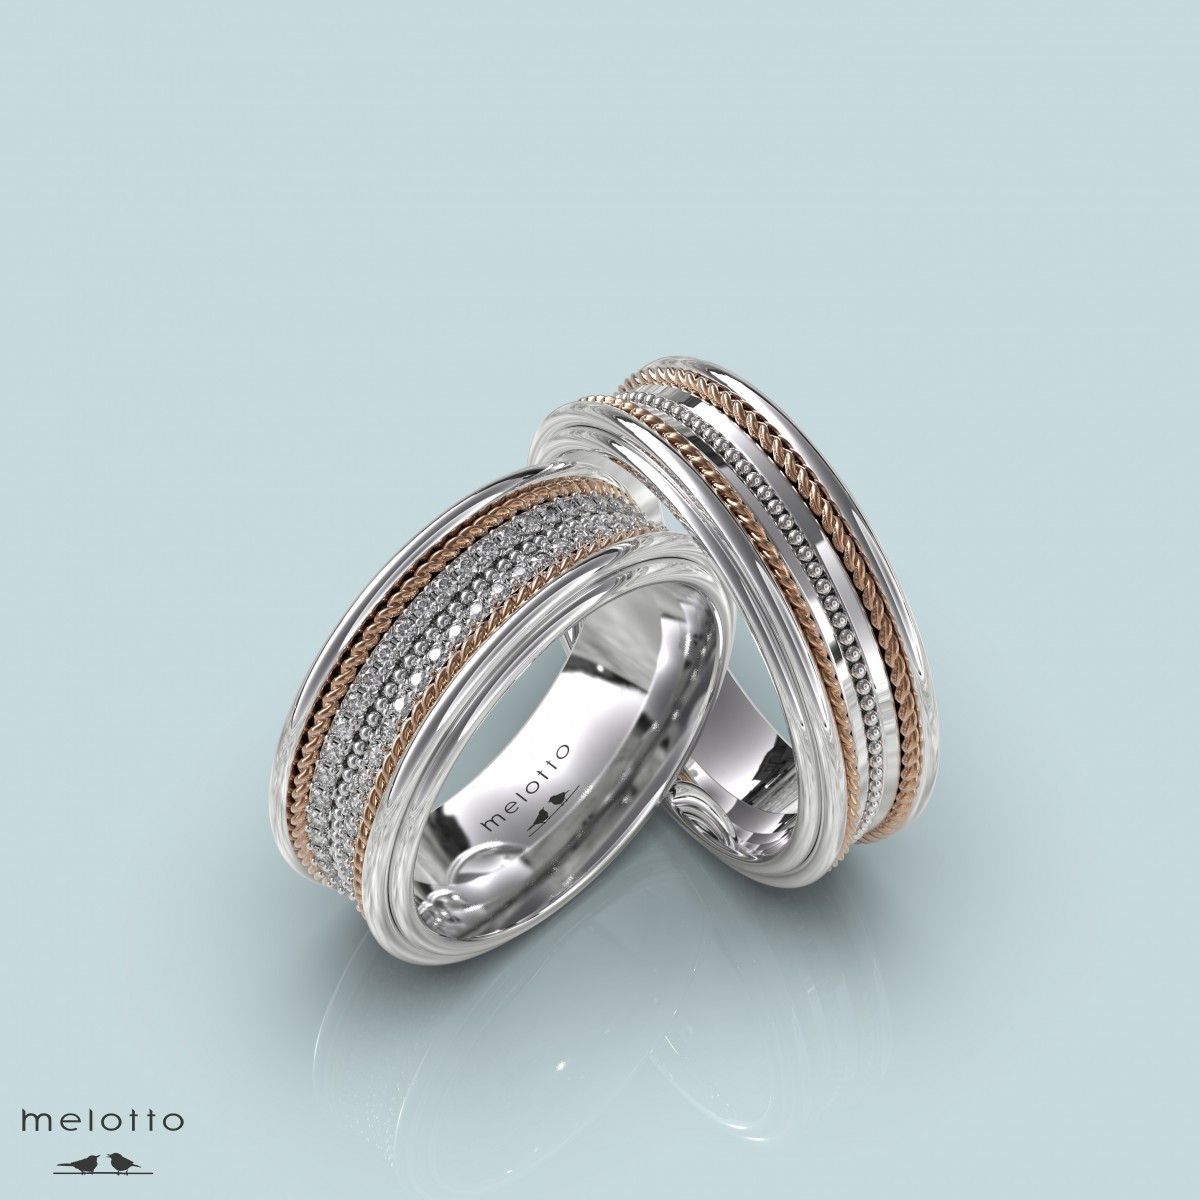 Вогнутые обручальные кольца с бриллиантовой дорожкой